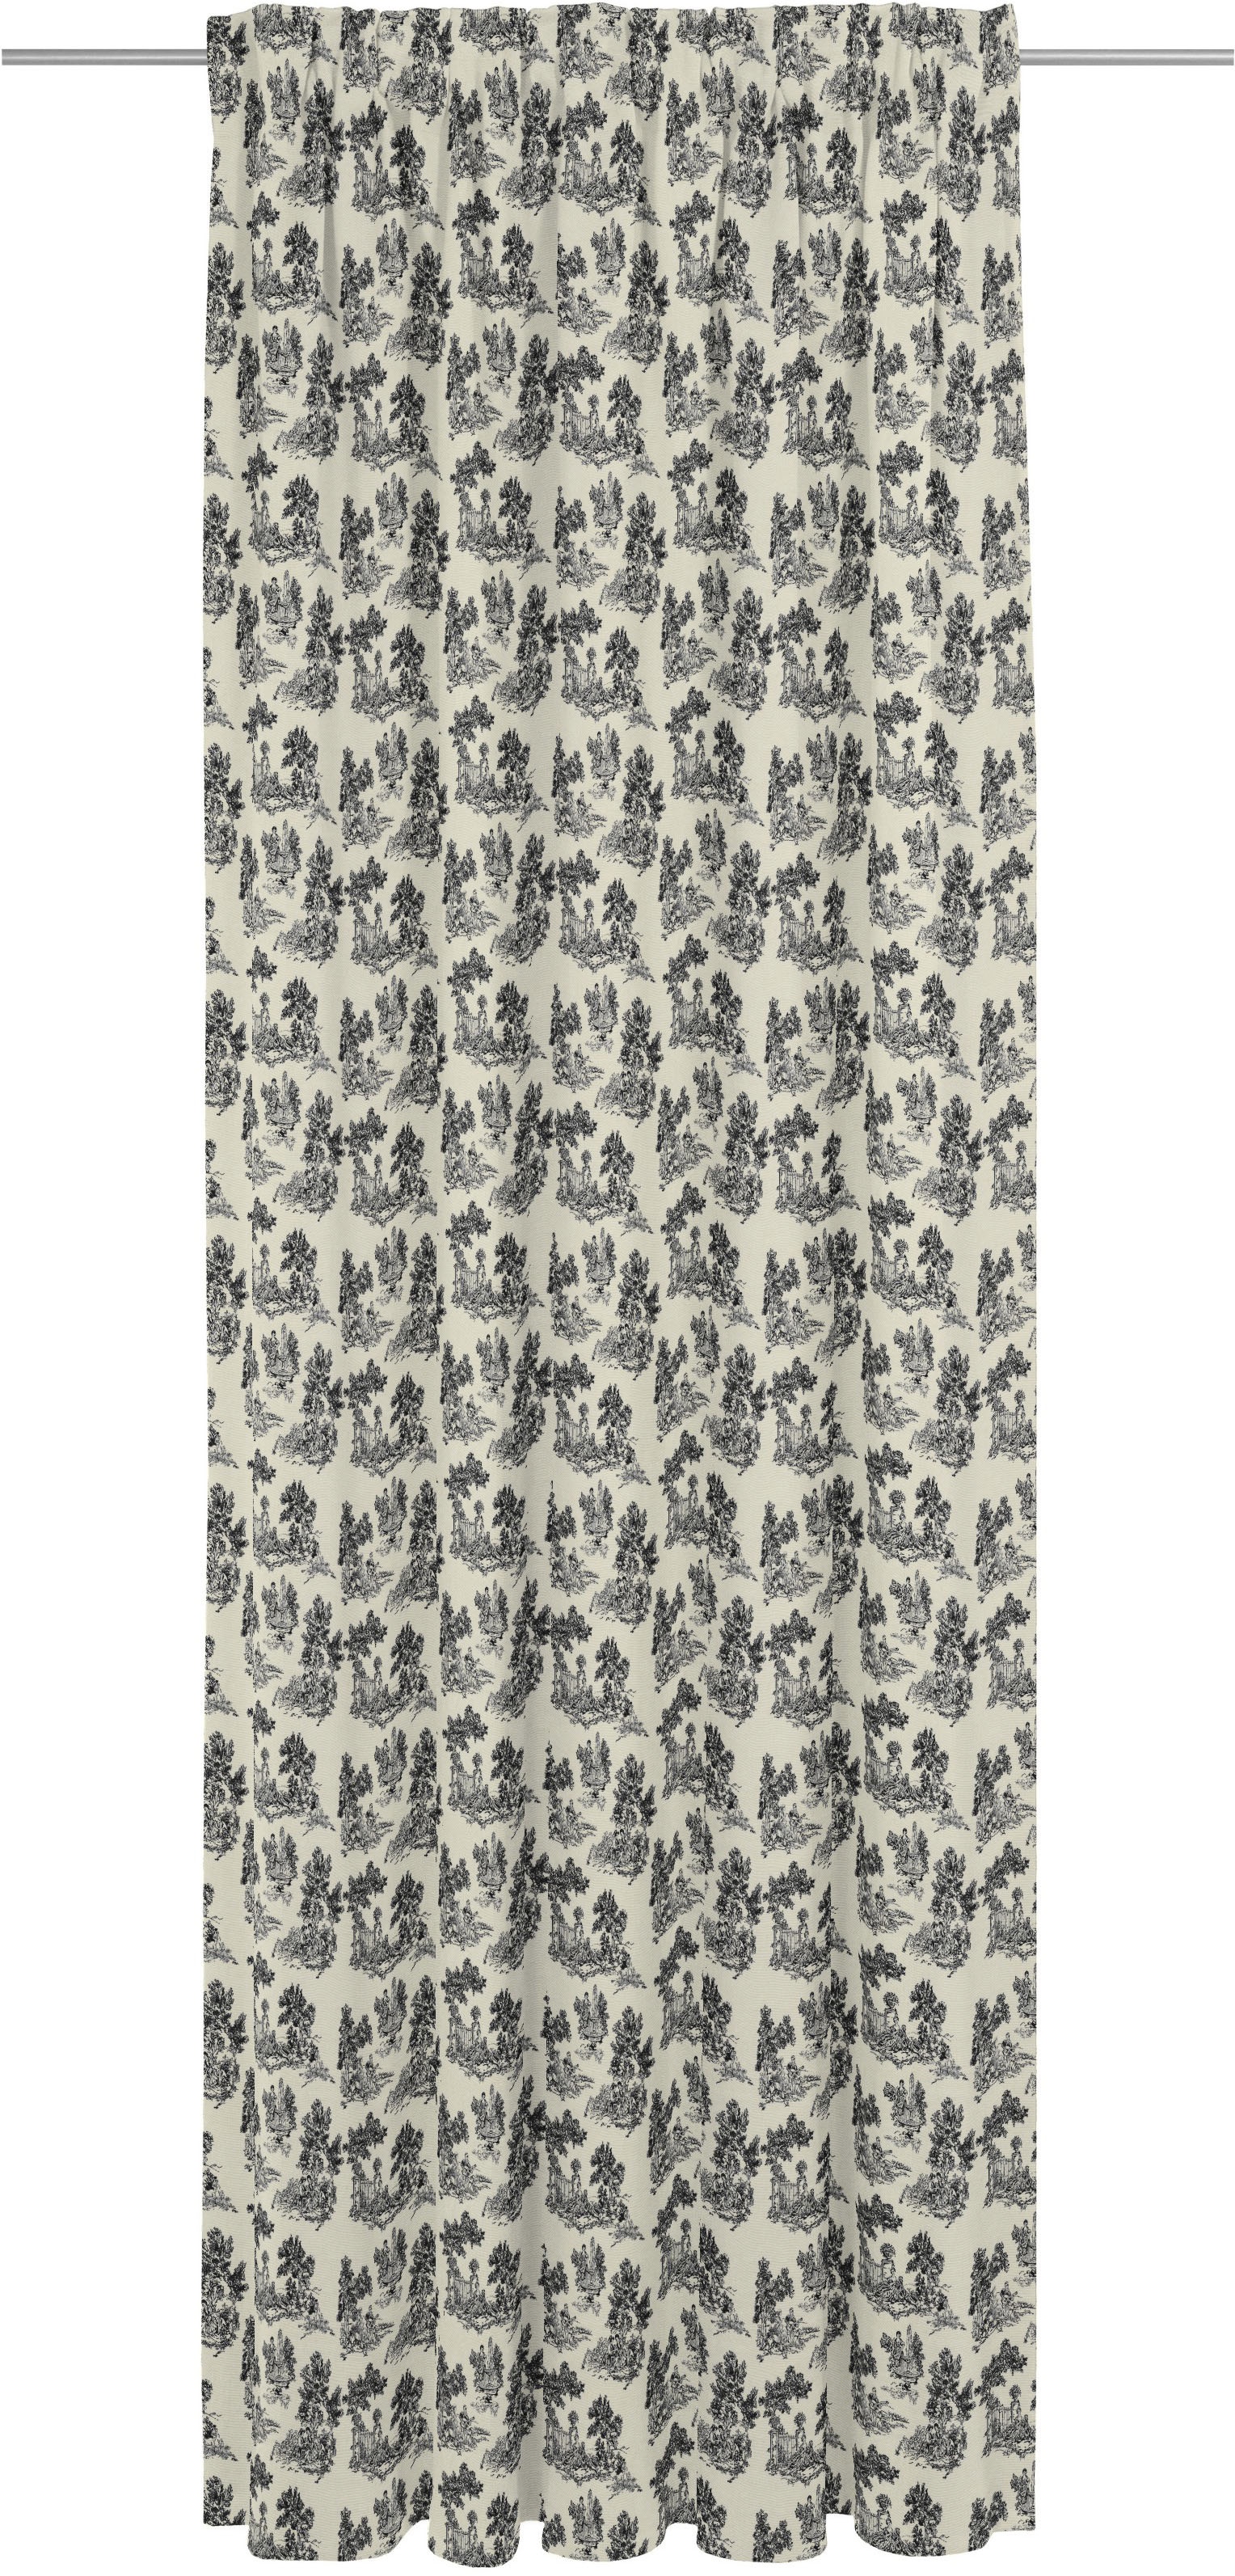 Vorhang ADAM "Good old days" Gardinen Gr. 175 cm, Multifunktionsband, 142 cm, schwarz-weiß (weiß, schwarz) Esszimmergardinen